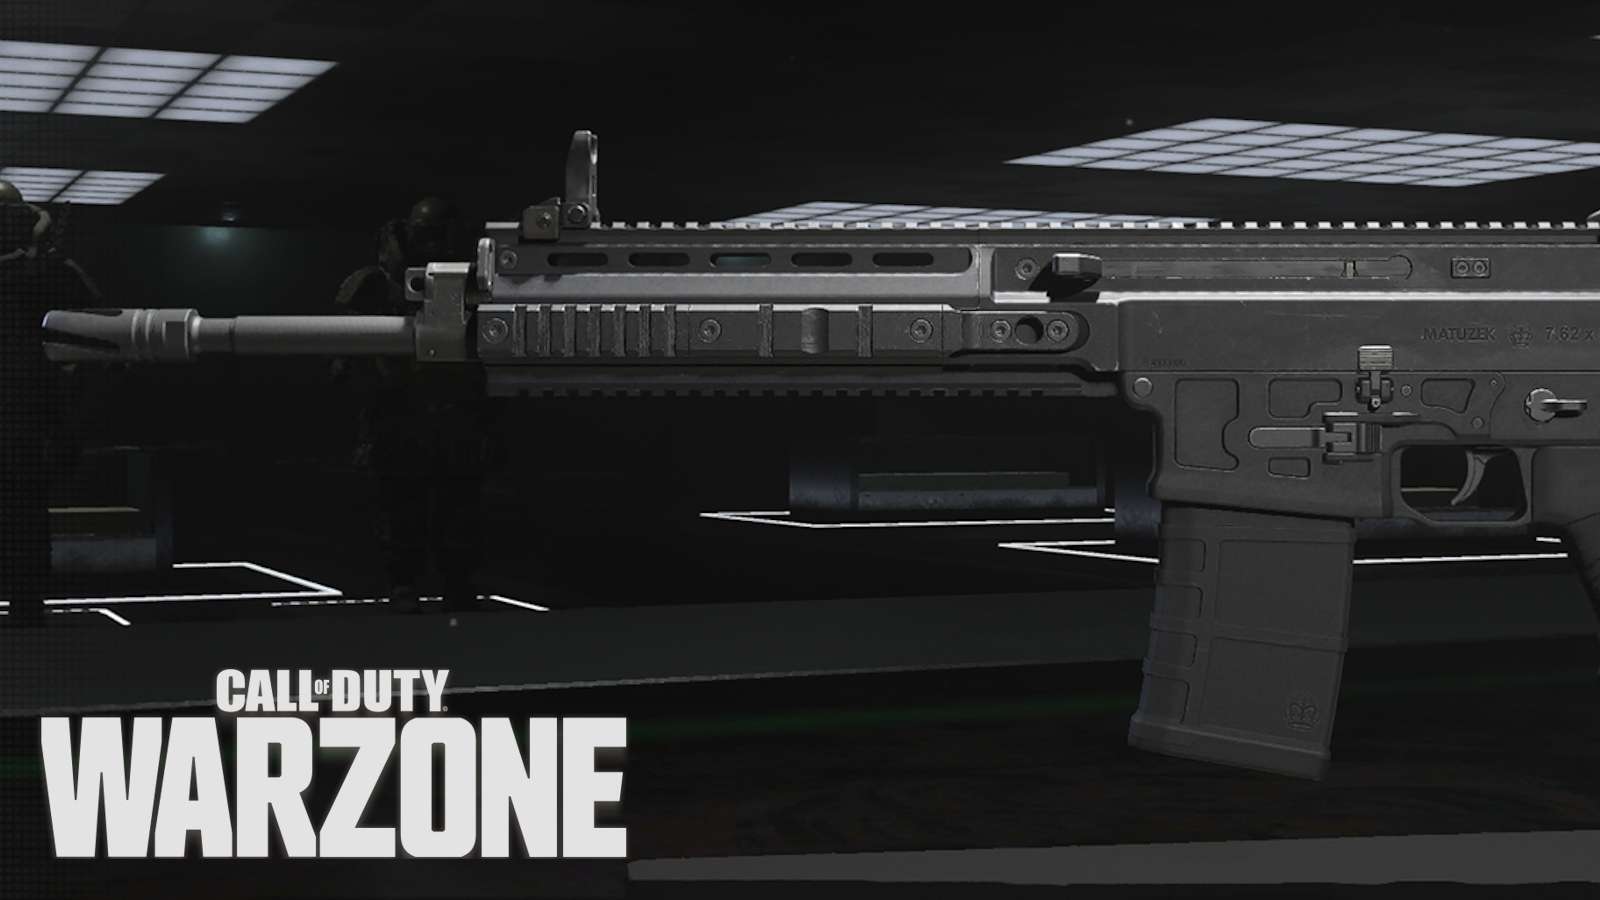 MTZ-762 battle rifle with Warzone logo.